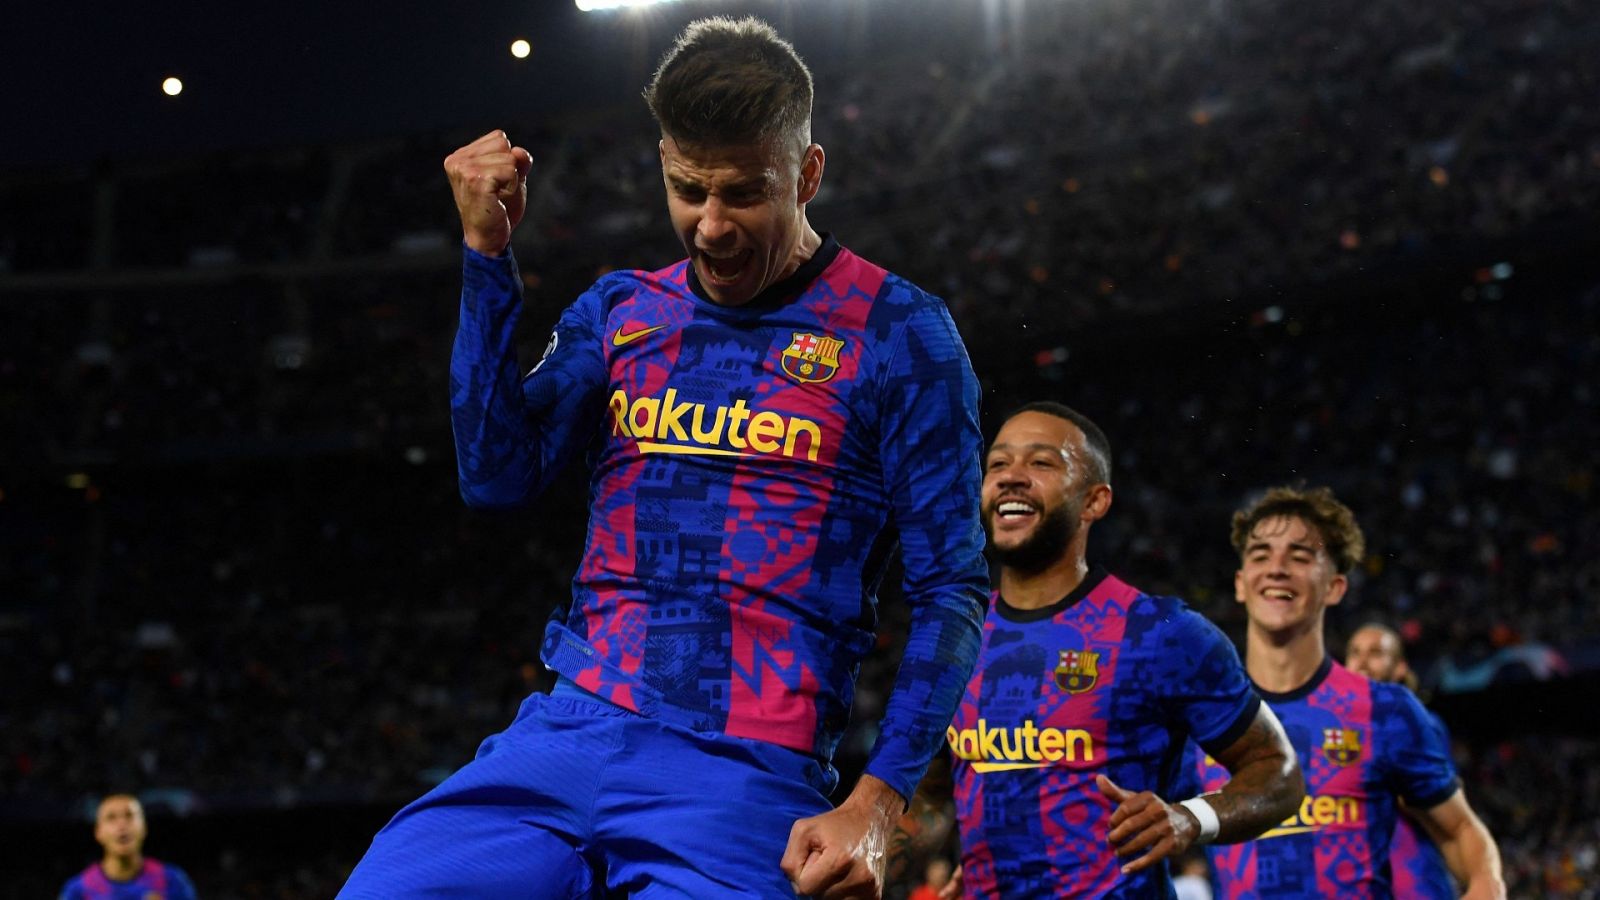 El Barça empieza a carburar en Champions con mínima